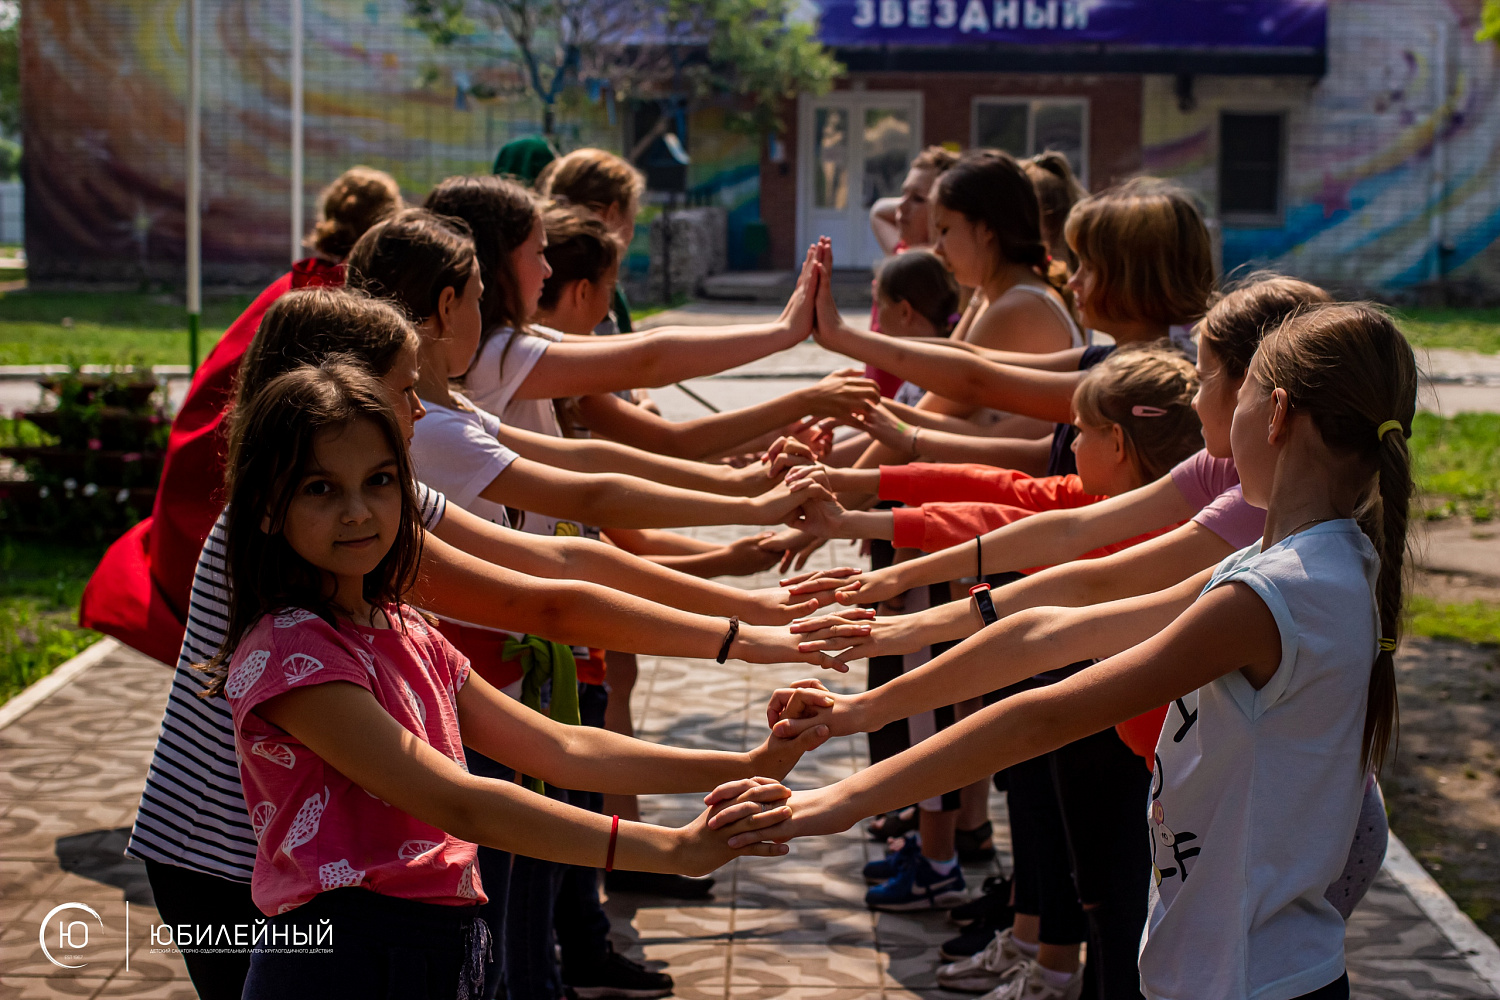 «Юбилейный» – Детский лагерь в Бердске, Новосибирск, фото 4